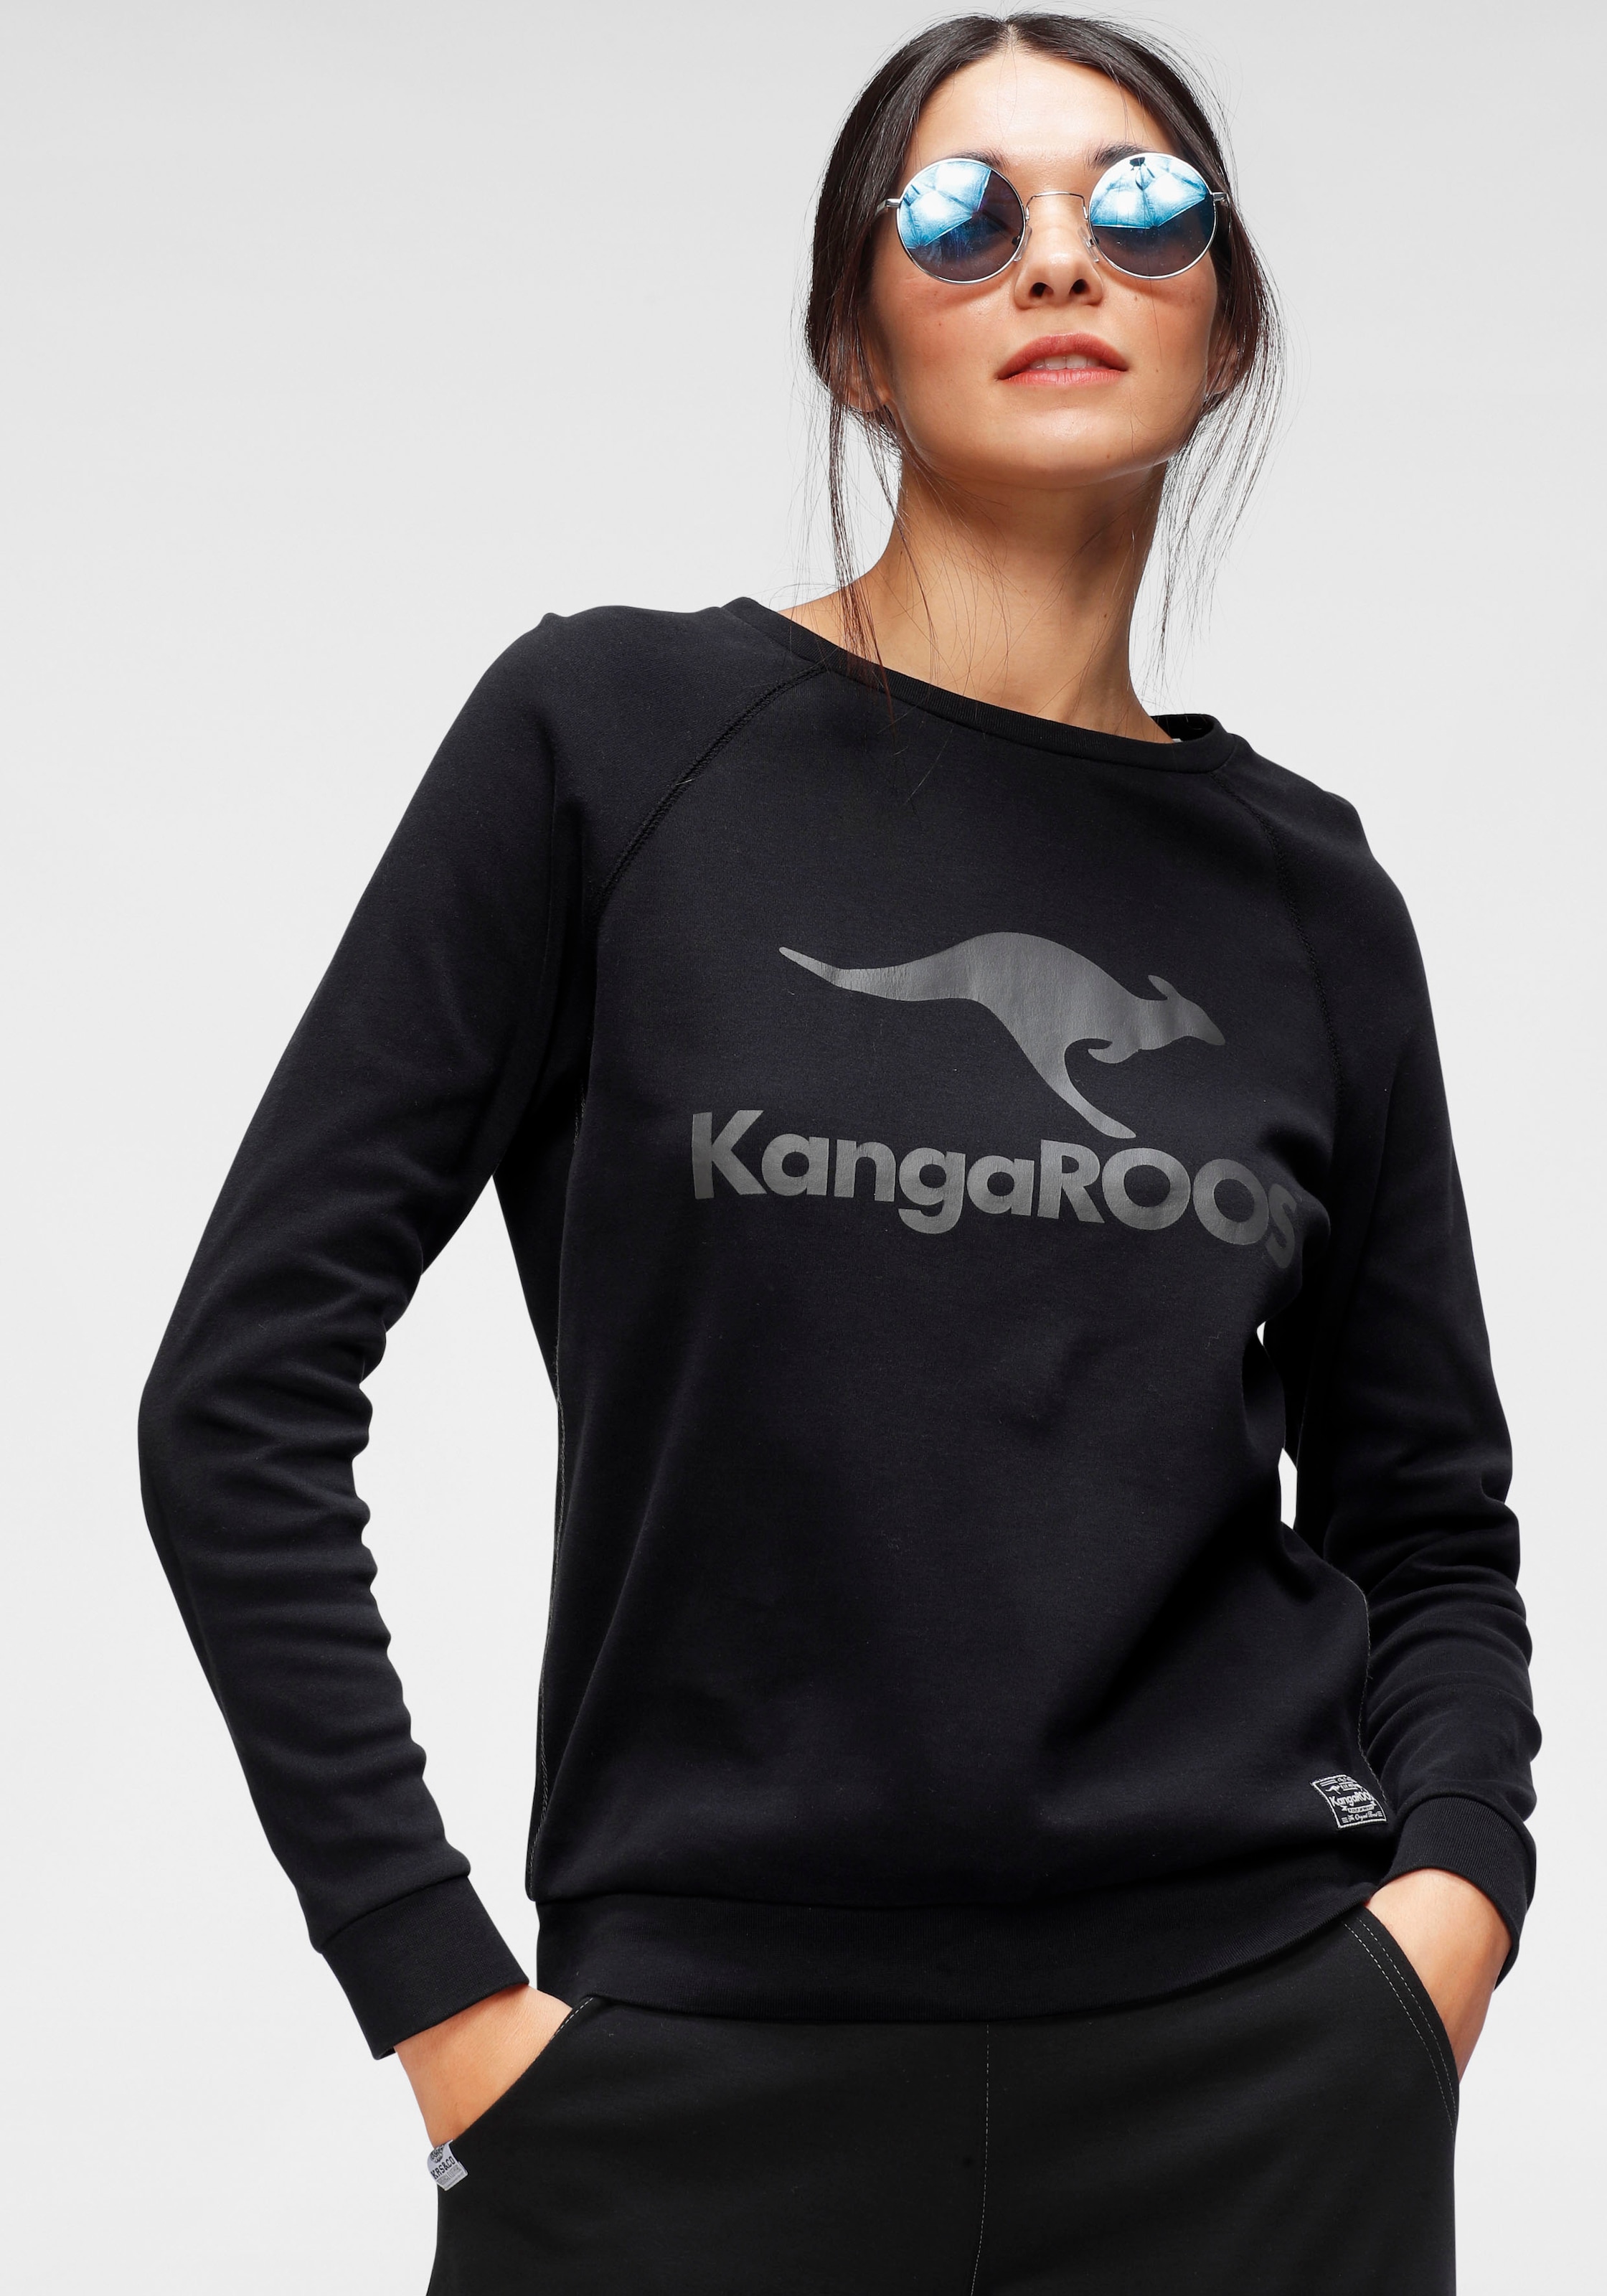 mit Sweater, Schweiz vorne kaufen KangaROOS grossem bei Label-Print online Jelmoli-Versand